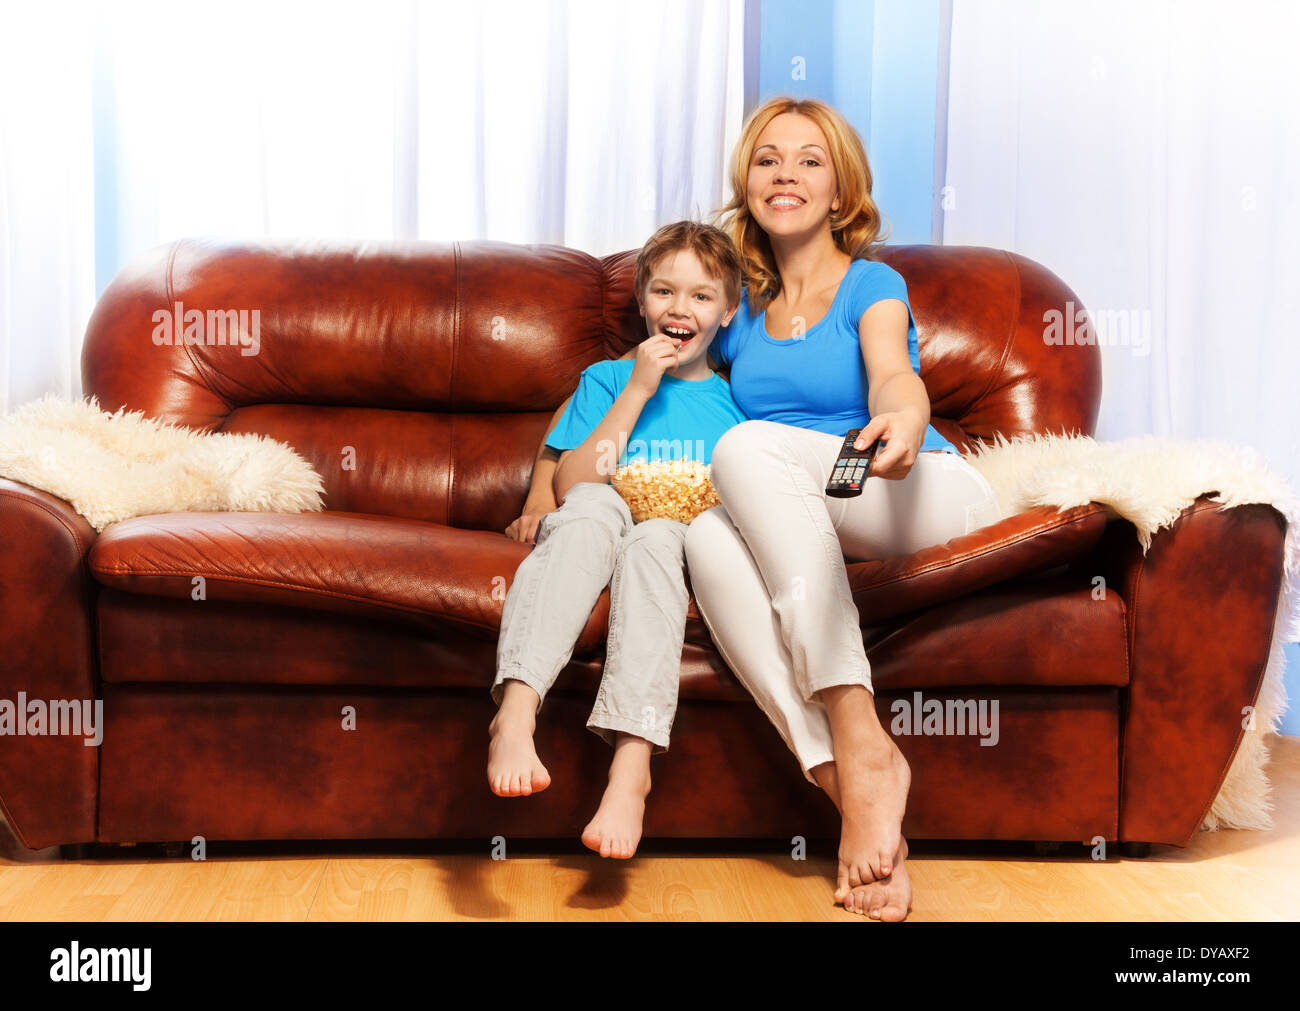 Маму на диване видео. Женщина с сыном на диване. Женщина с сыном на руках на диване. Мама с сыном смотрят ТВ. Мама с сыном на диване домашнее.